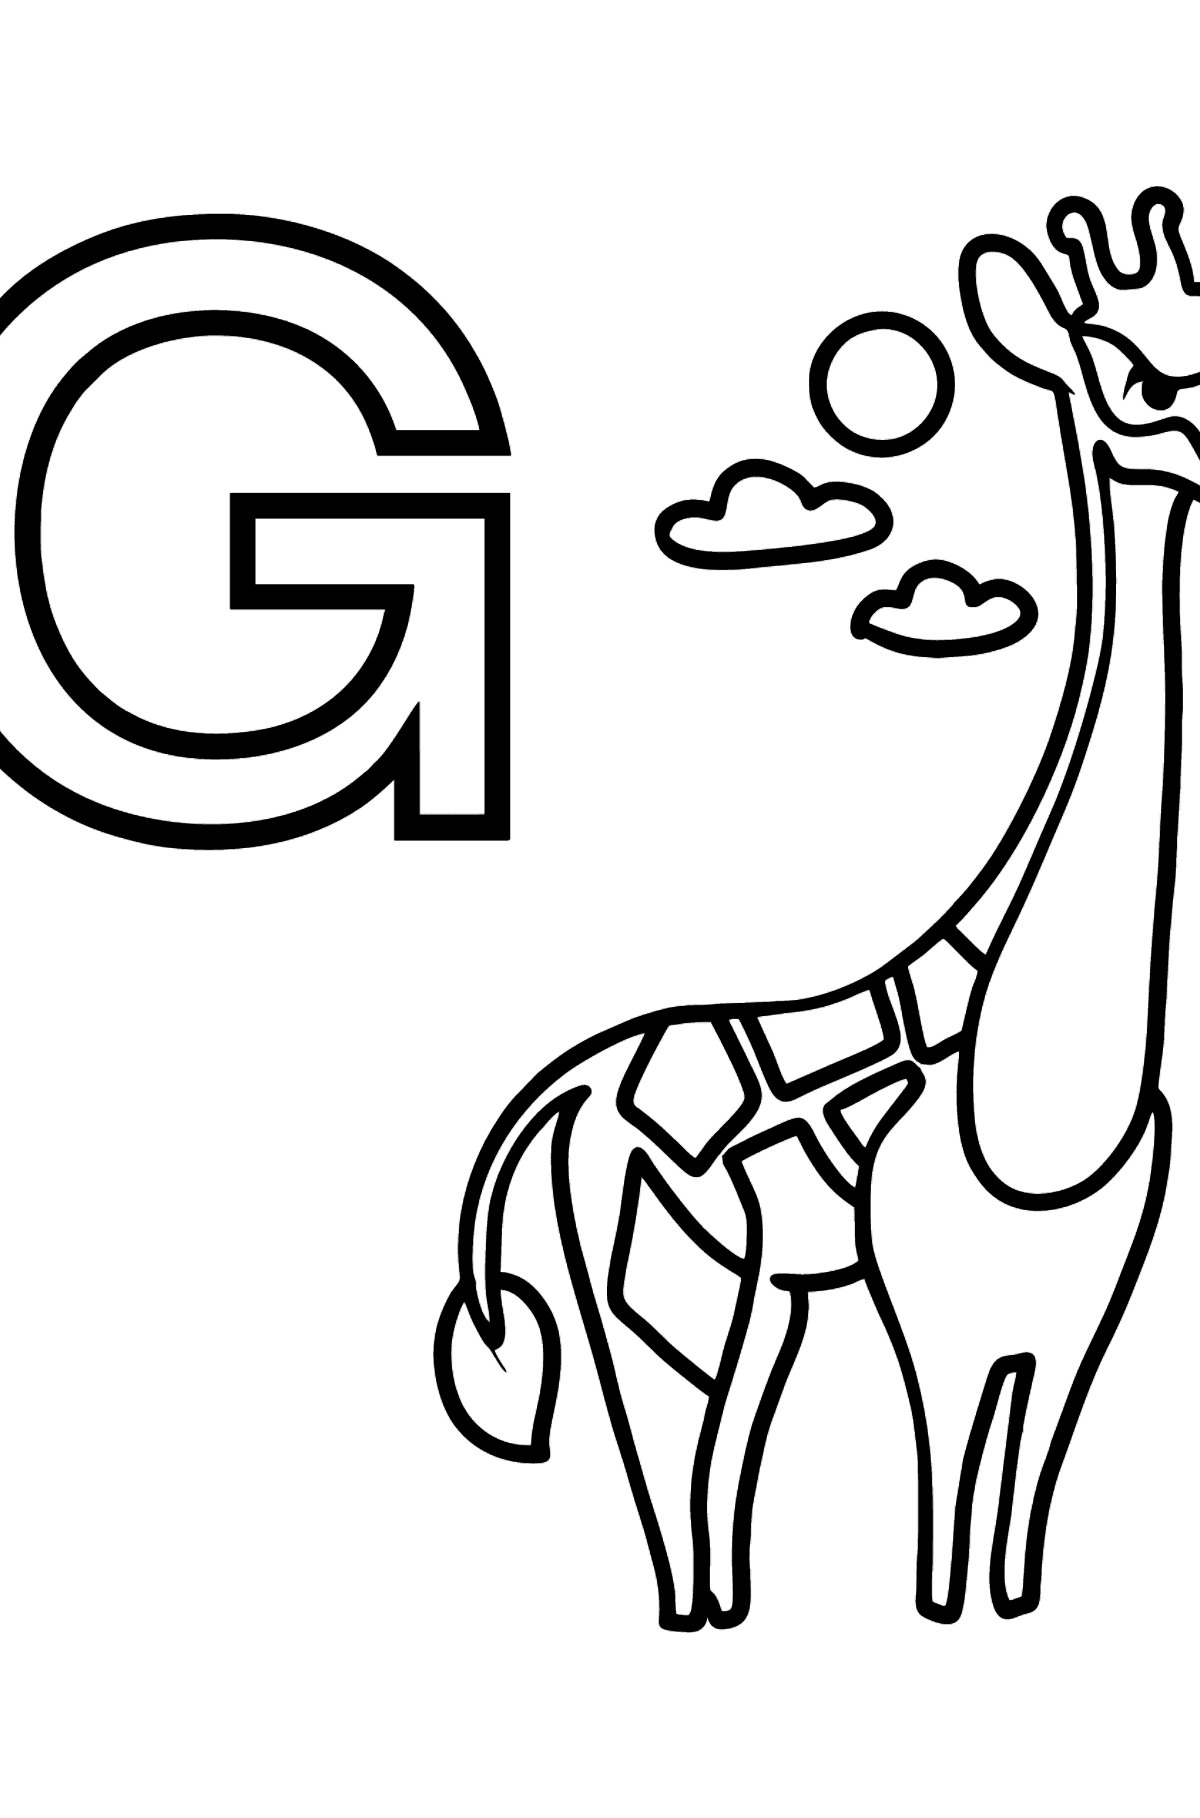 Coloriage - Lettre allemande G - GIRAFFE - Coloriages pour les Enfants